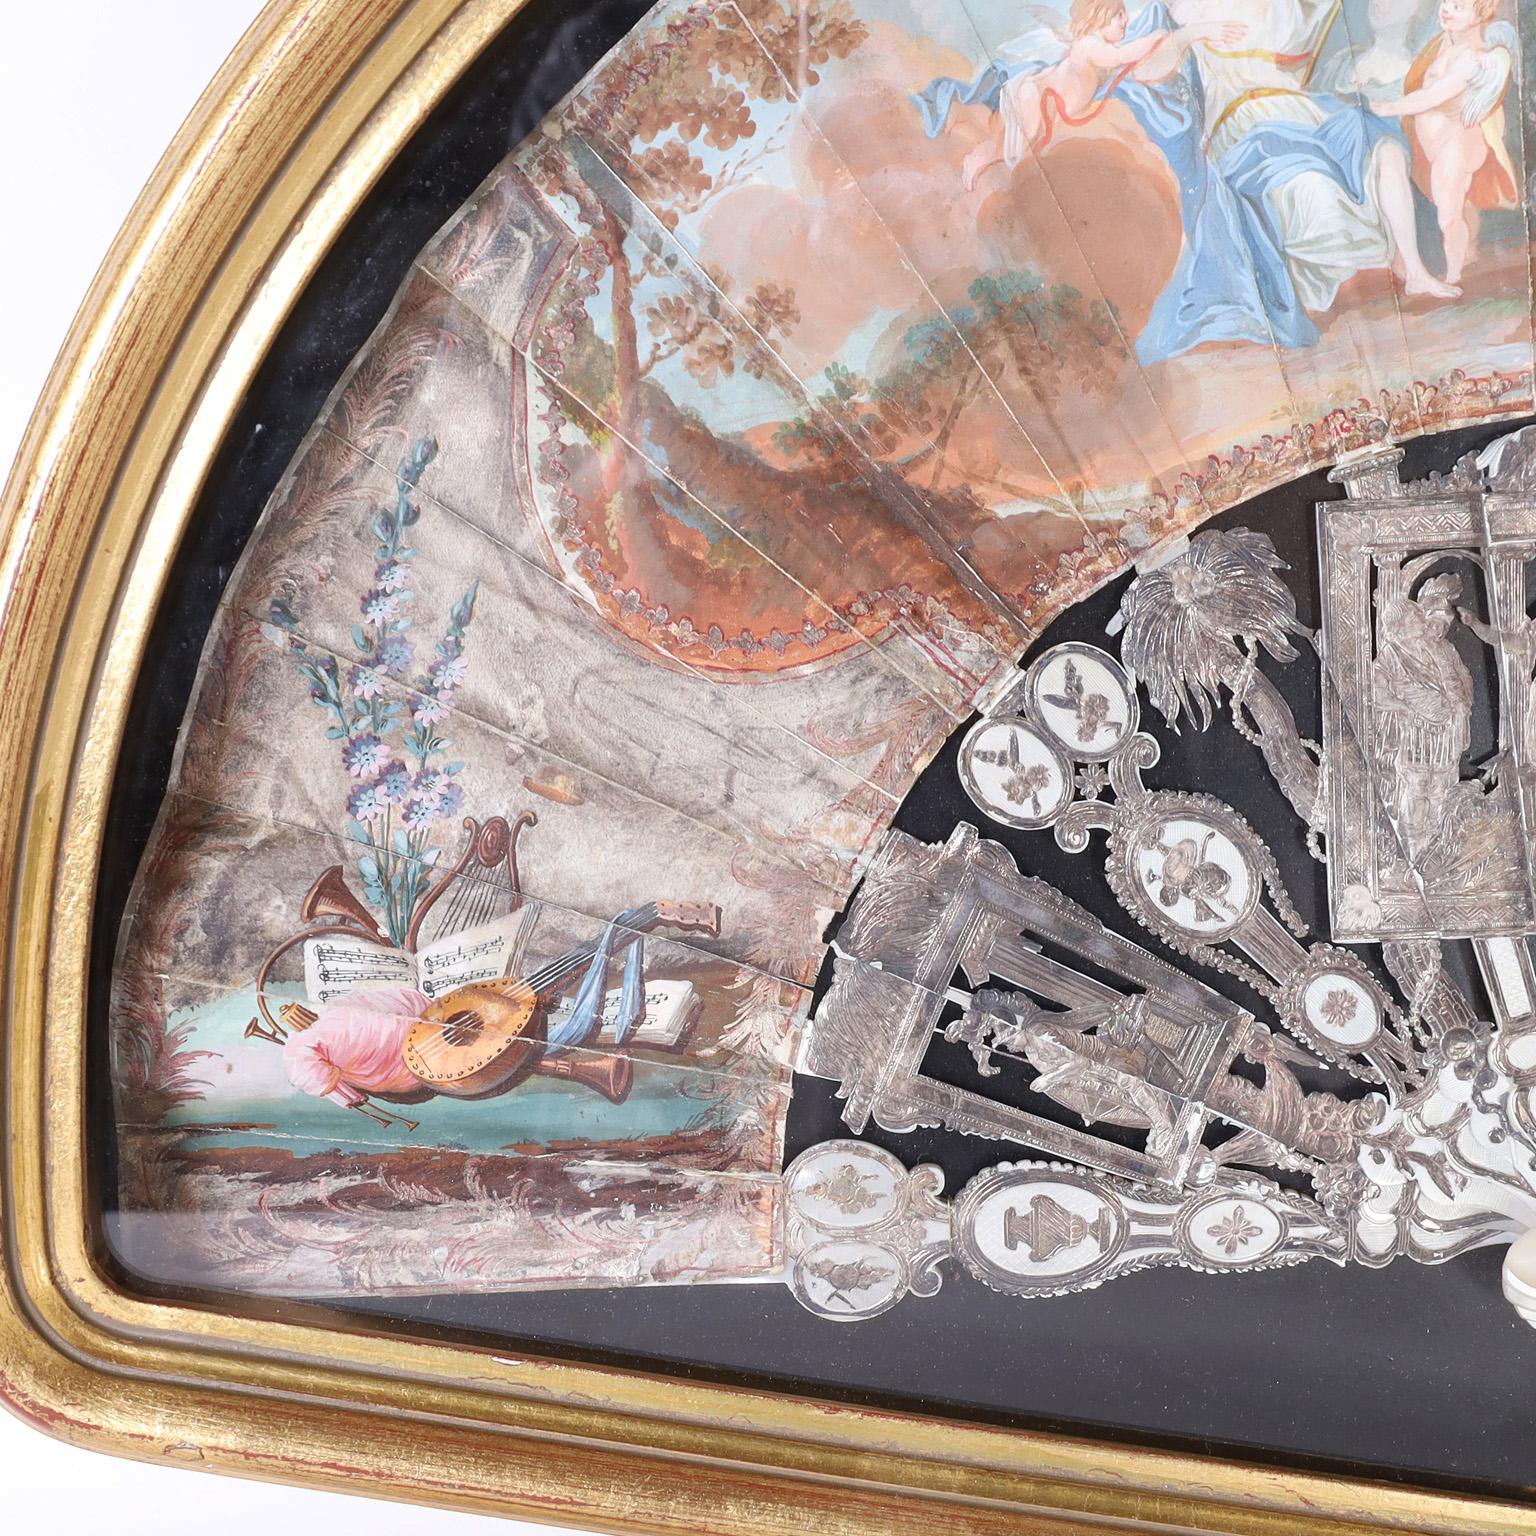 Impressionnant éventail à main italien du XIXe siècle, remarquablement conservé avec ses baguettes et ses protections en métal argenté représentant des dieux anciens, des palmiers et des emblèmes classiques. Les feuilles de papier sont des